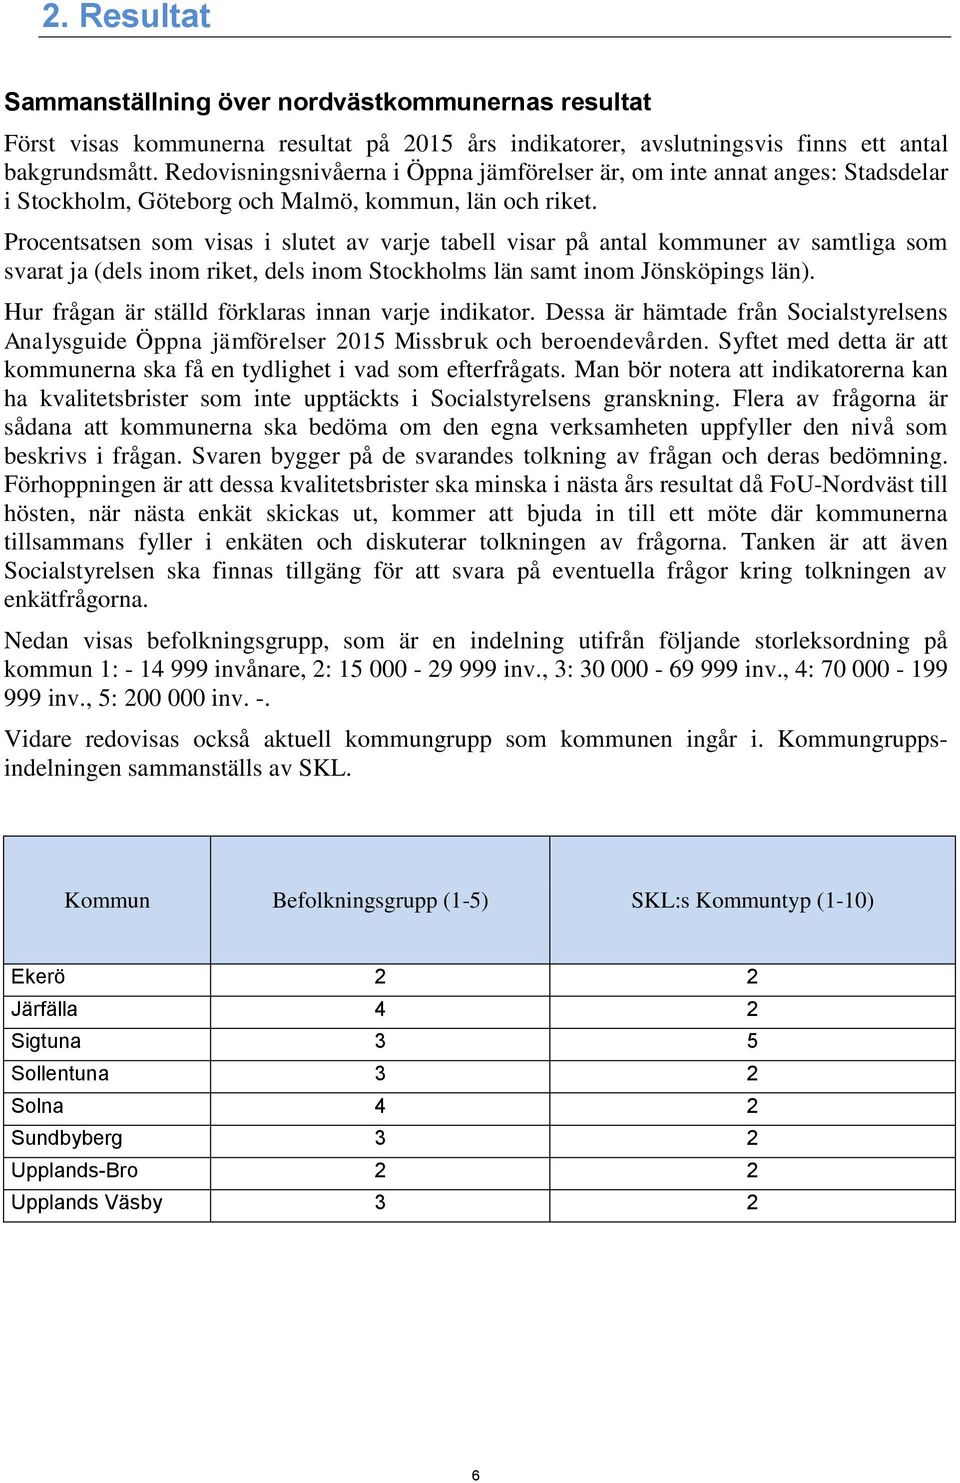 Procentsatsen som visas i slutet av varje tabell visar på antal kommuner av samtliga som svarat ja (dels inom riket, dels inom Stockholms län samt inom Jönsköpings län).